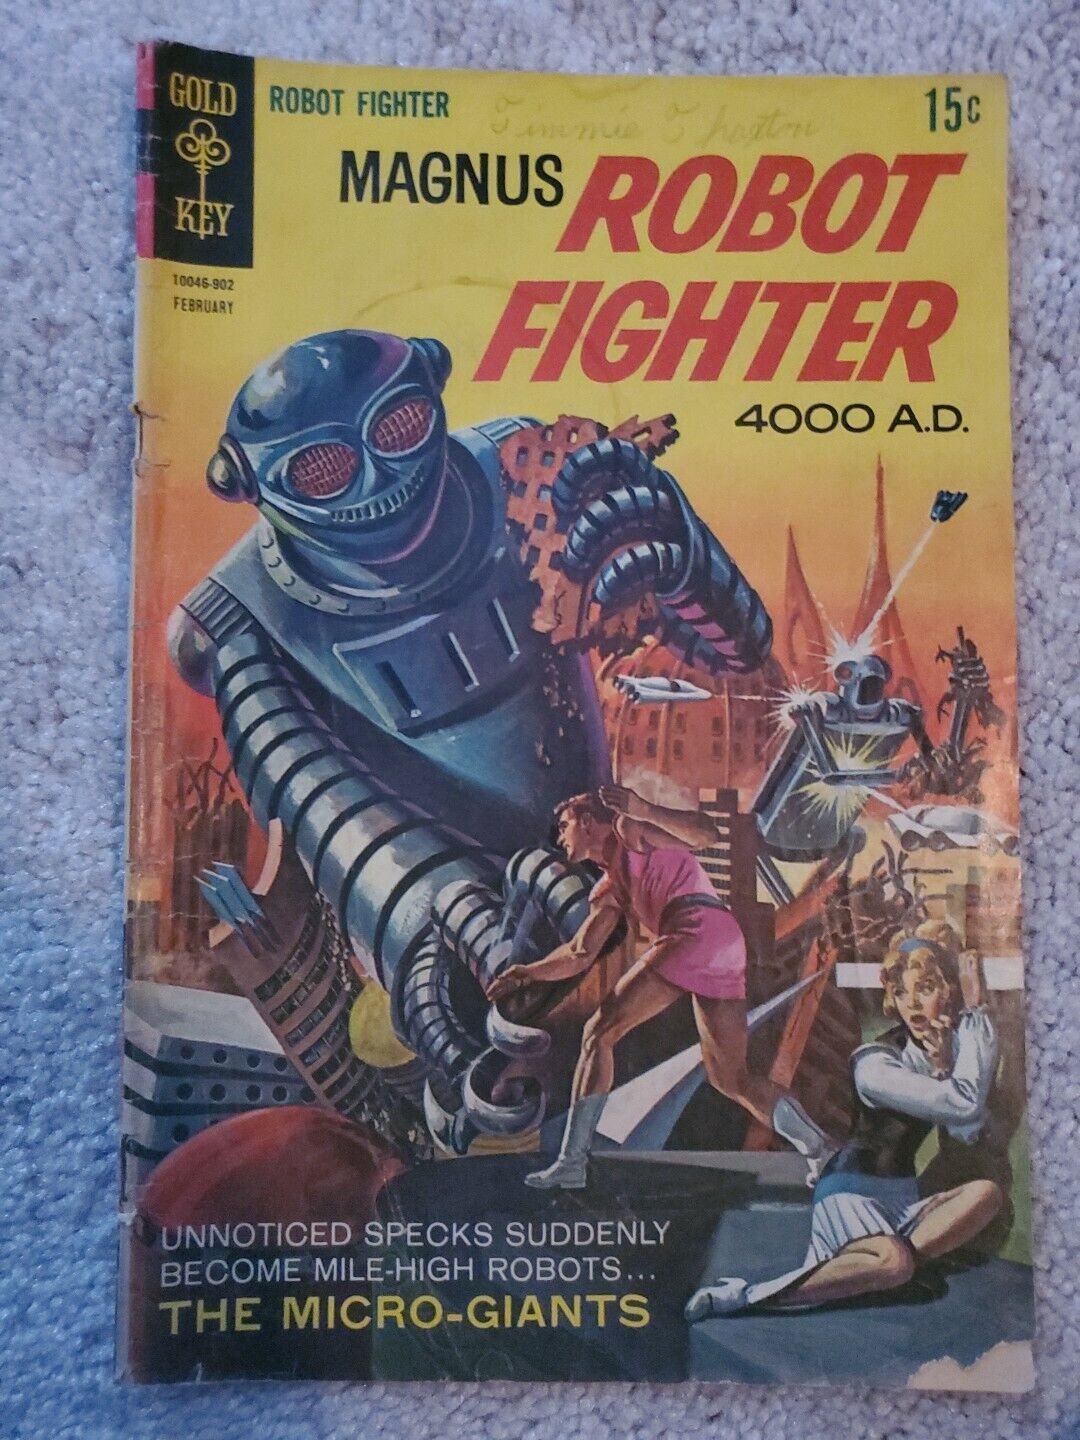 Magnus, Robot Fighter #25 Gold Key 1969